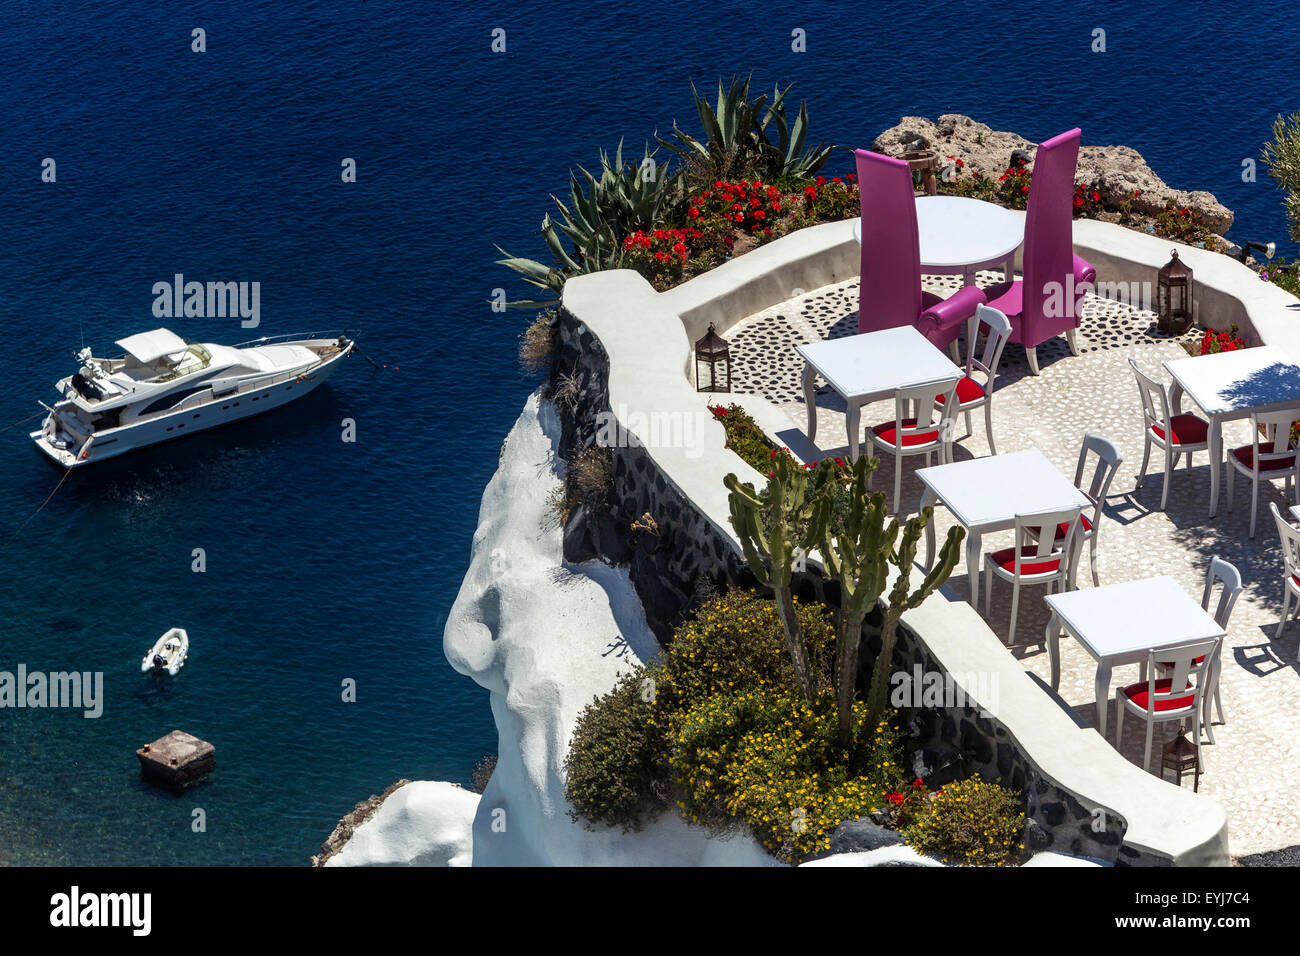 Luxus-Hotel über dem Meer Santorini Restaurant Esstisch bereit für Gäste Oia  Griechische Inseln, Kykladen, Griechenland Yacht Stockfotografie - Alamy